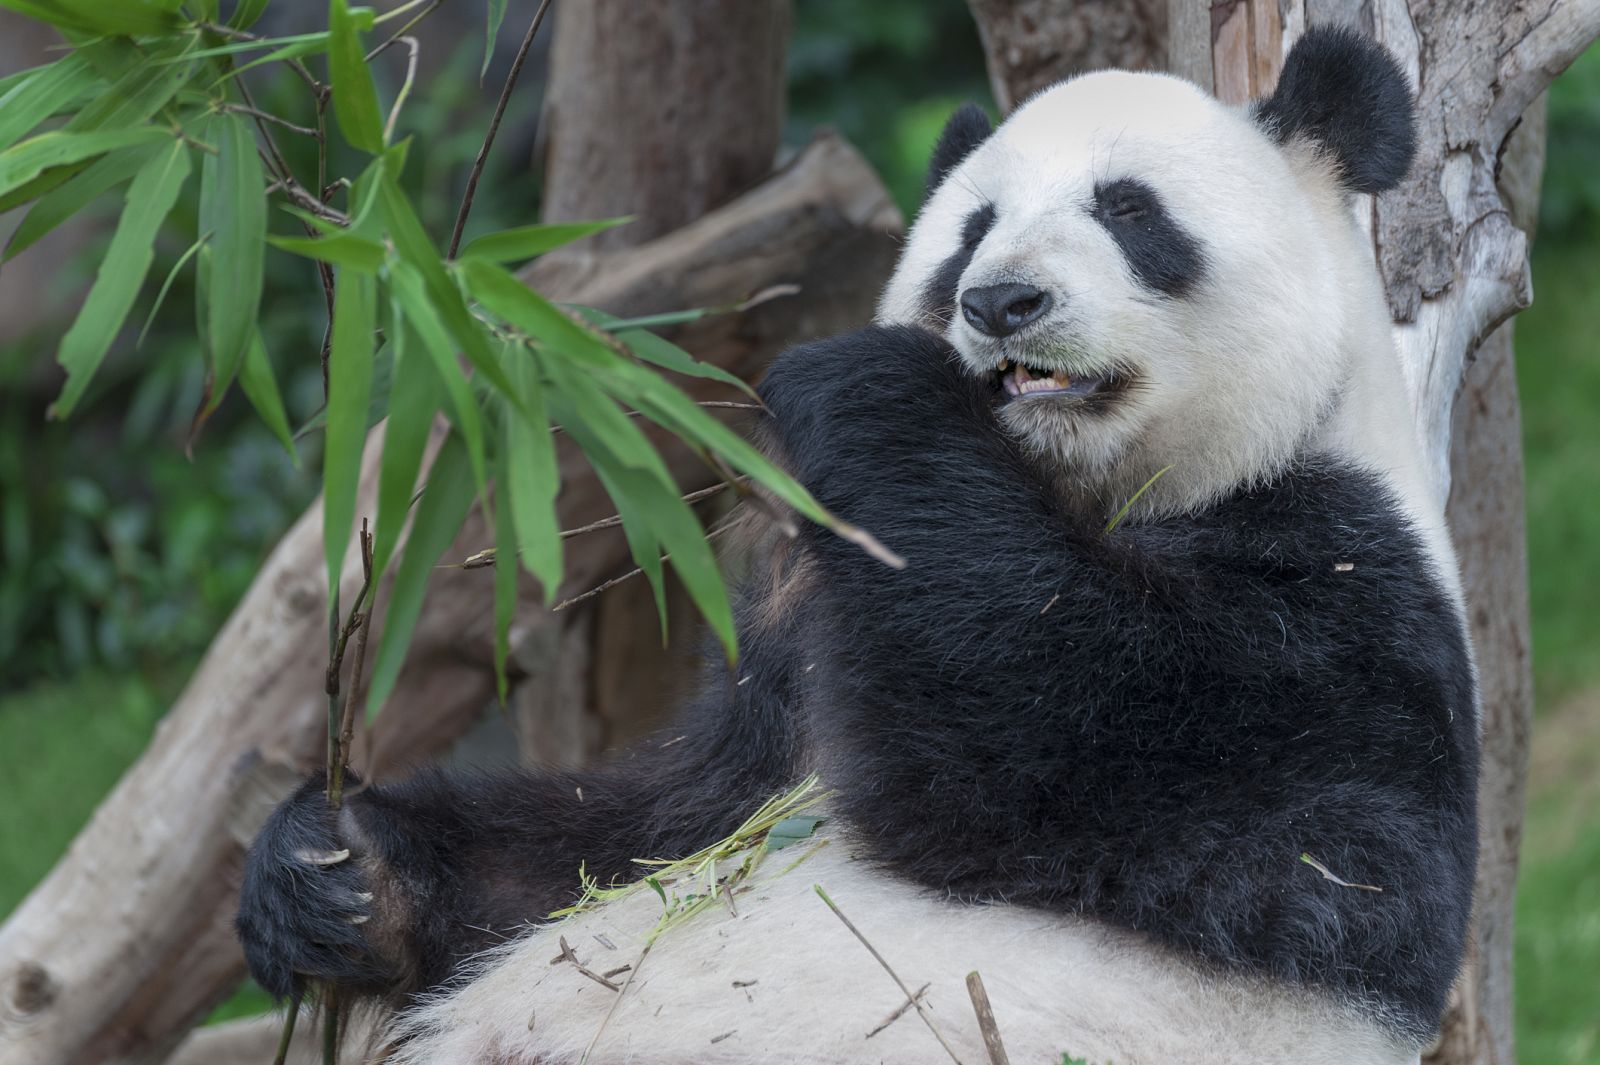 Un panda gigante chino come más de 12 kilos de bambú al día.